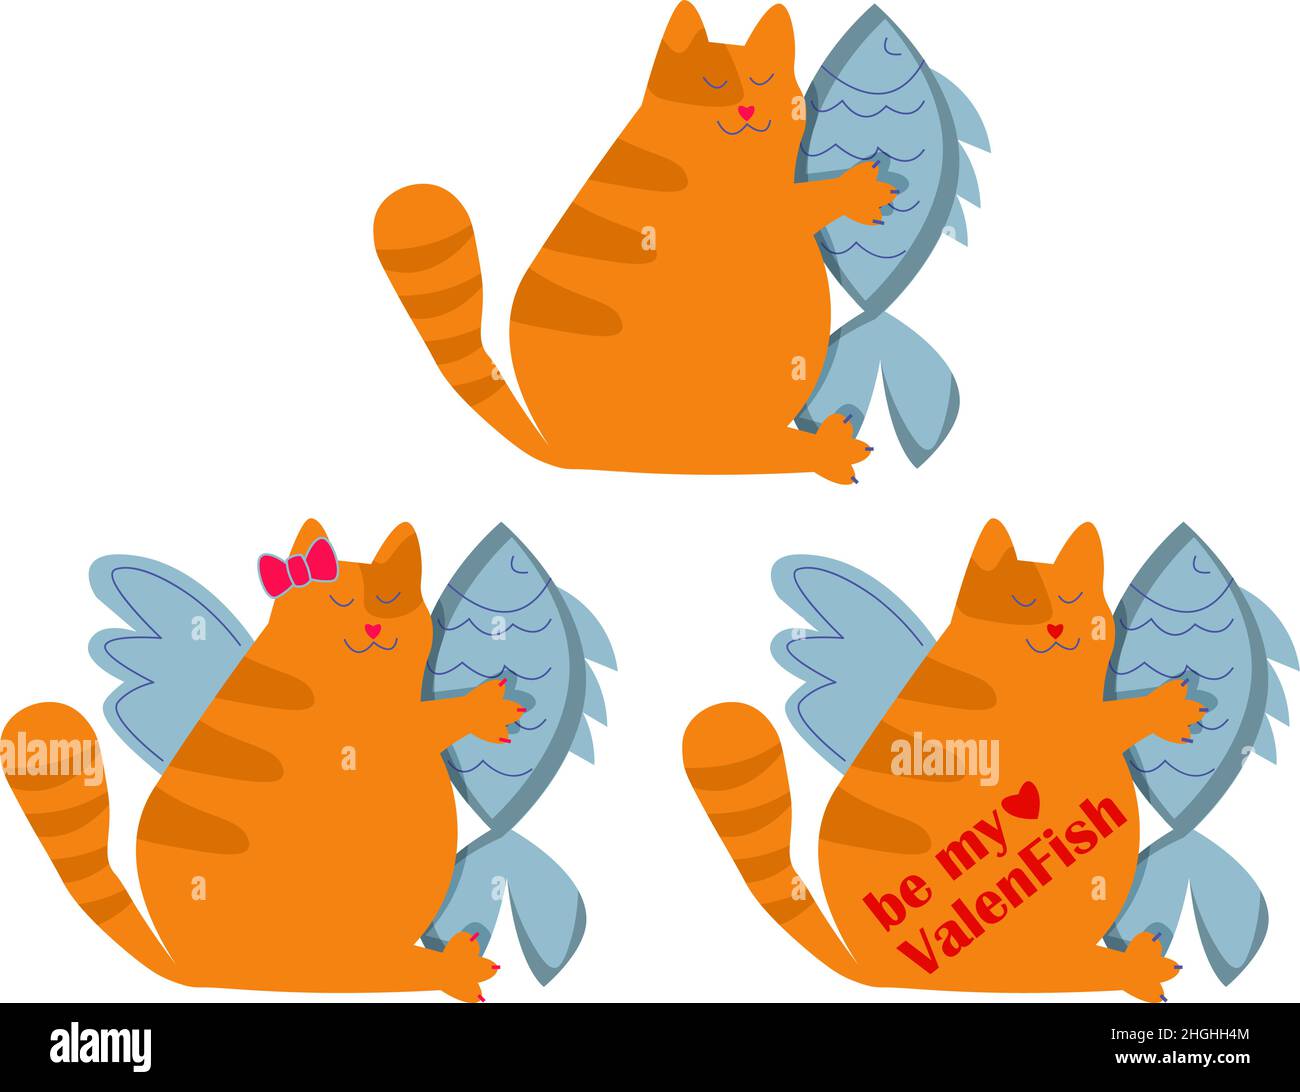 Ensemble de cartes de vœux amusantes pour la Saint-Valentin avec gros chat tenant le coeur de poisson et la typographie Illustration de Vecteur